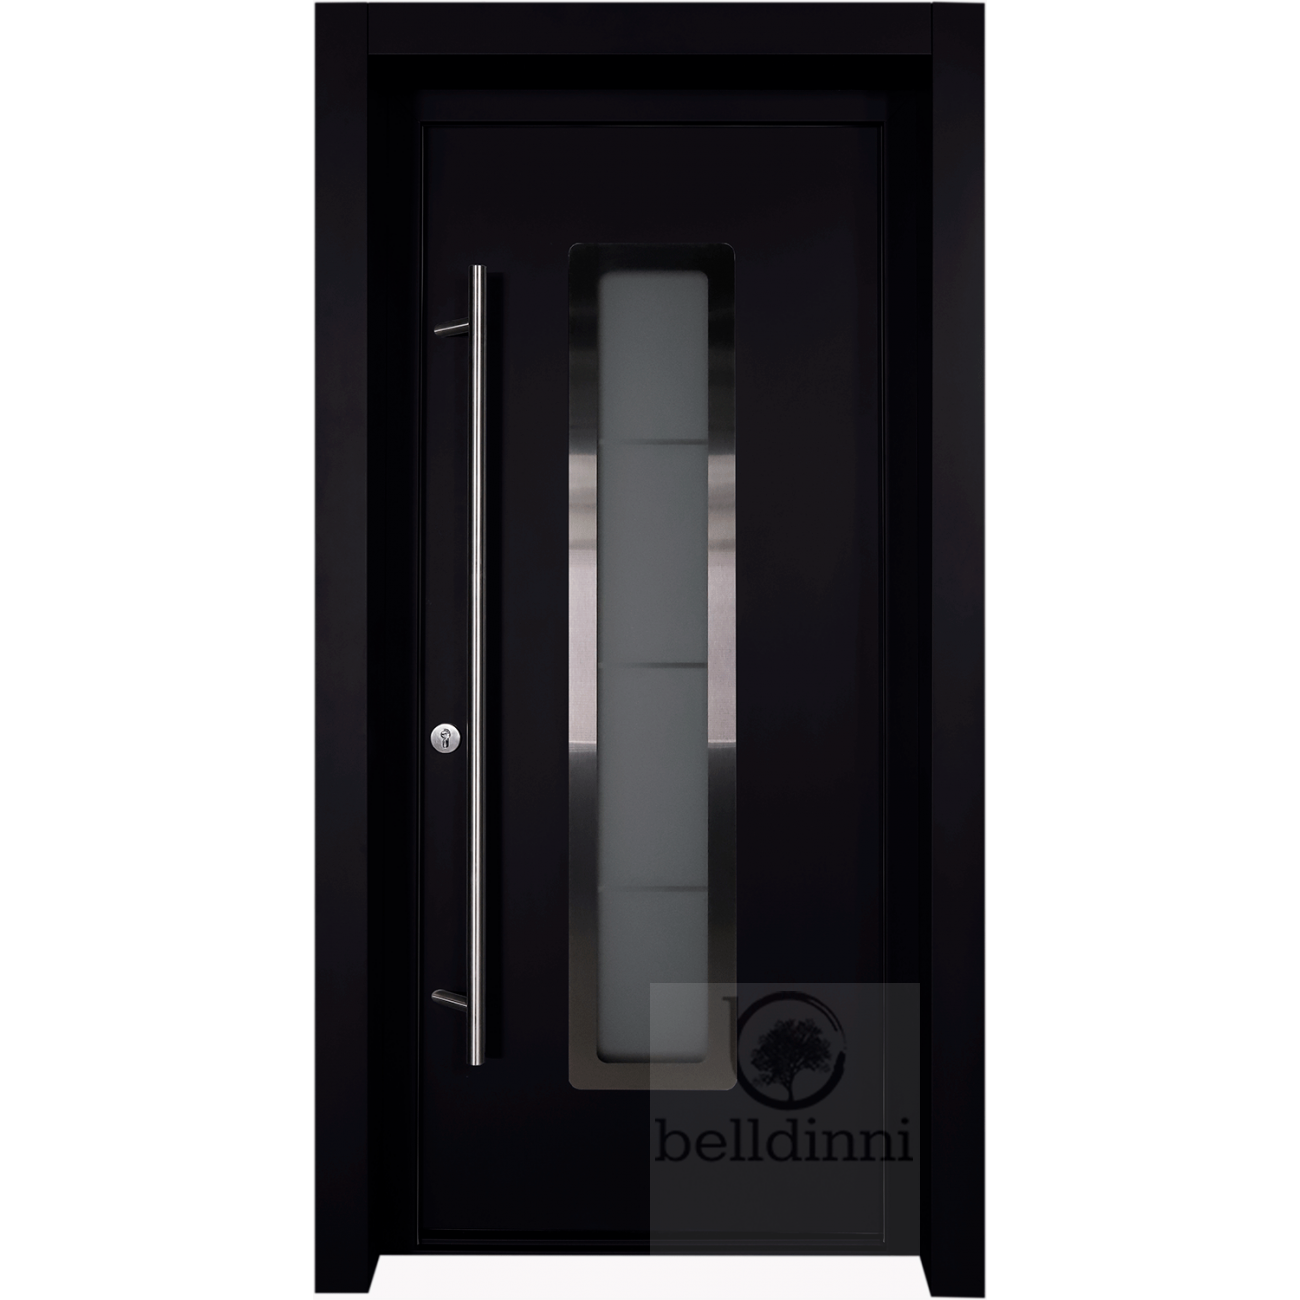 MODERN FRONT STEEL DOOR ARGOS BLACK/WHITE 37 2/5" X 81 1/2" RHI + HARDWARE